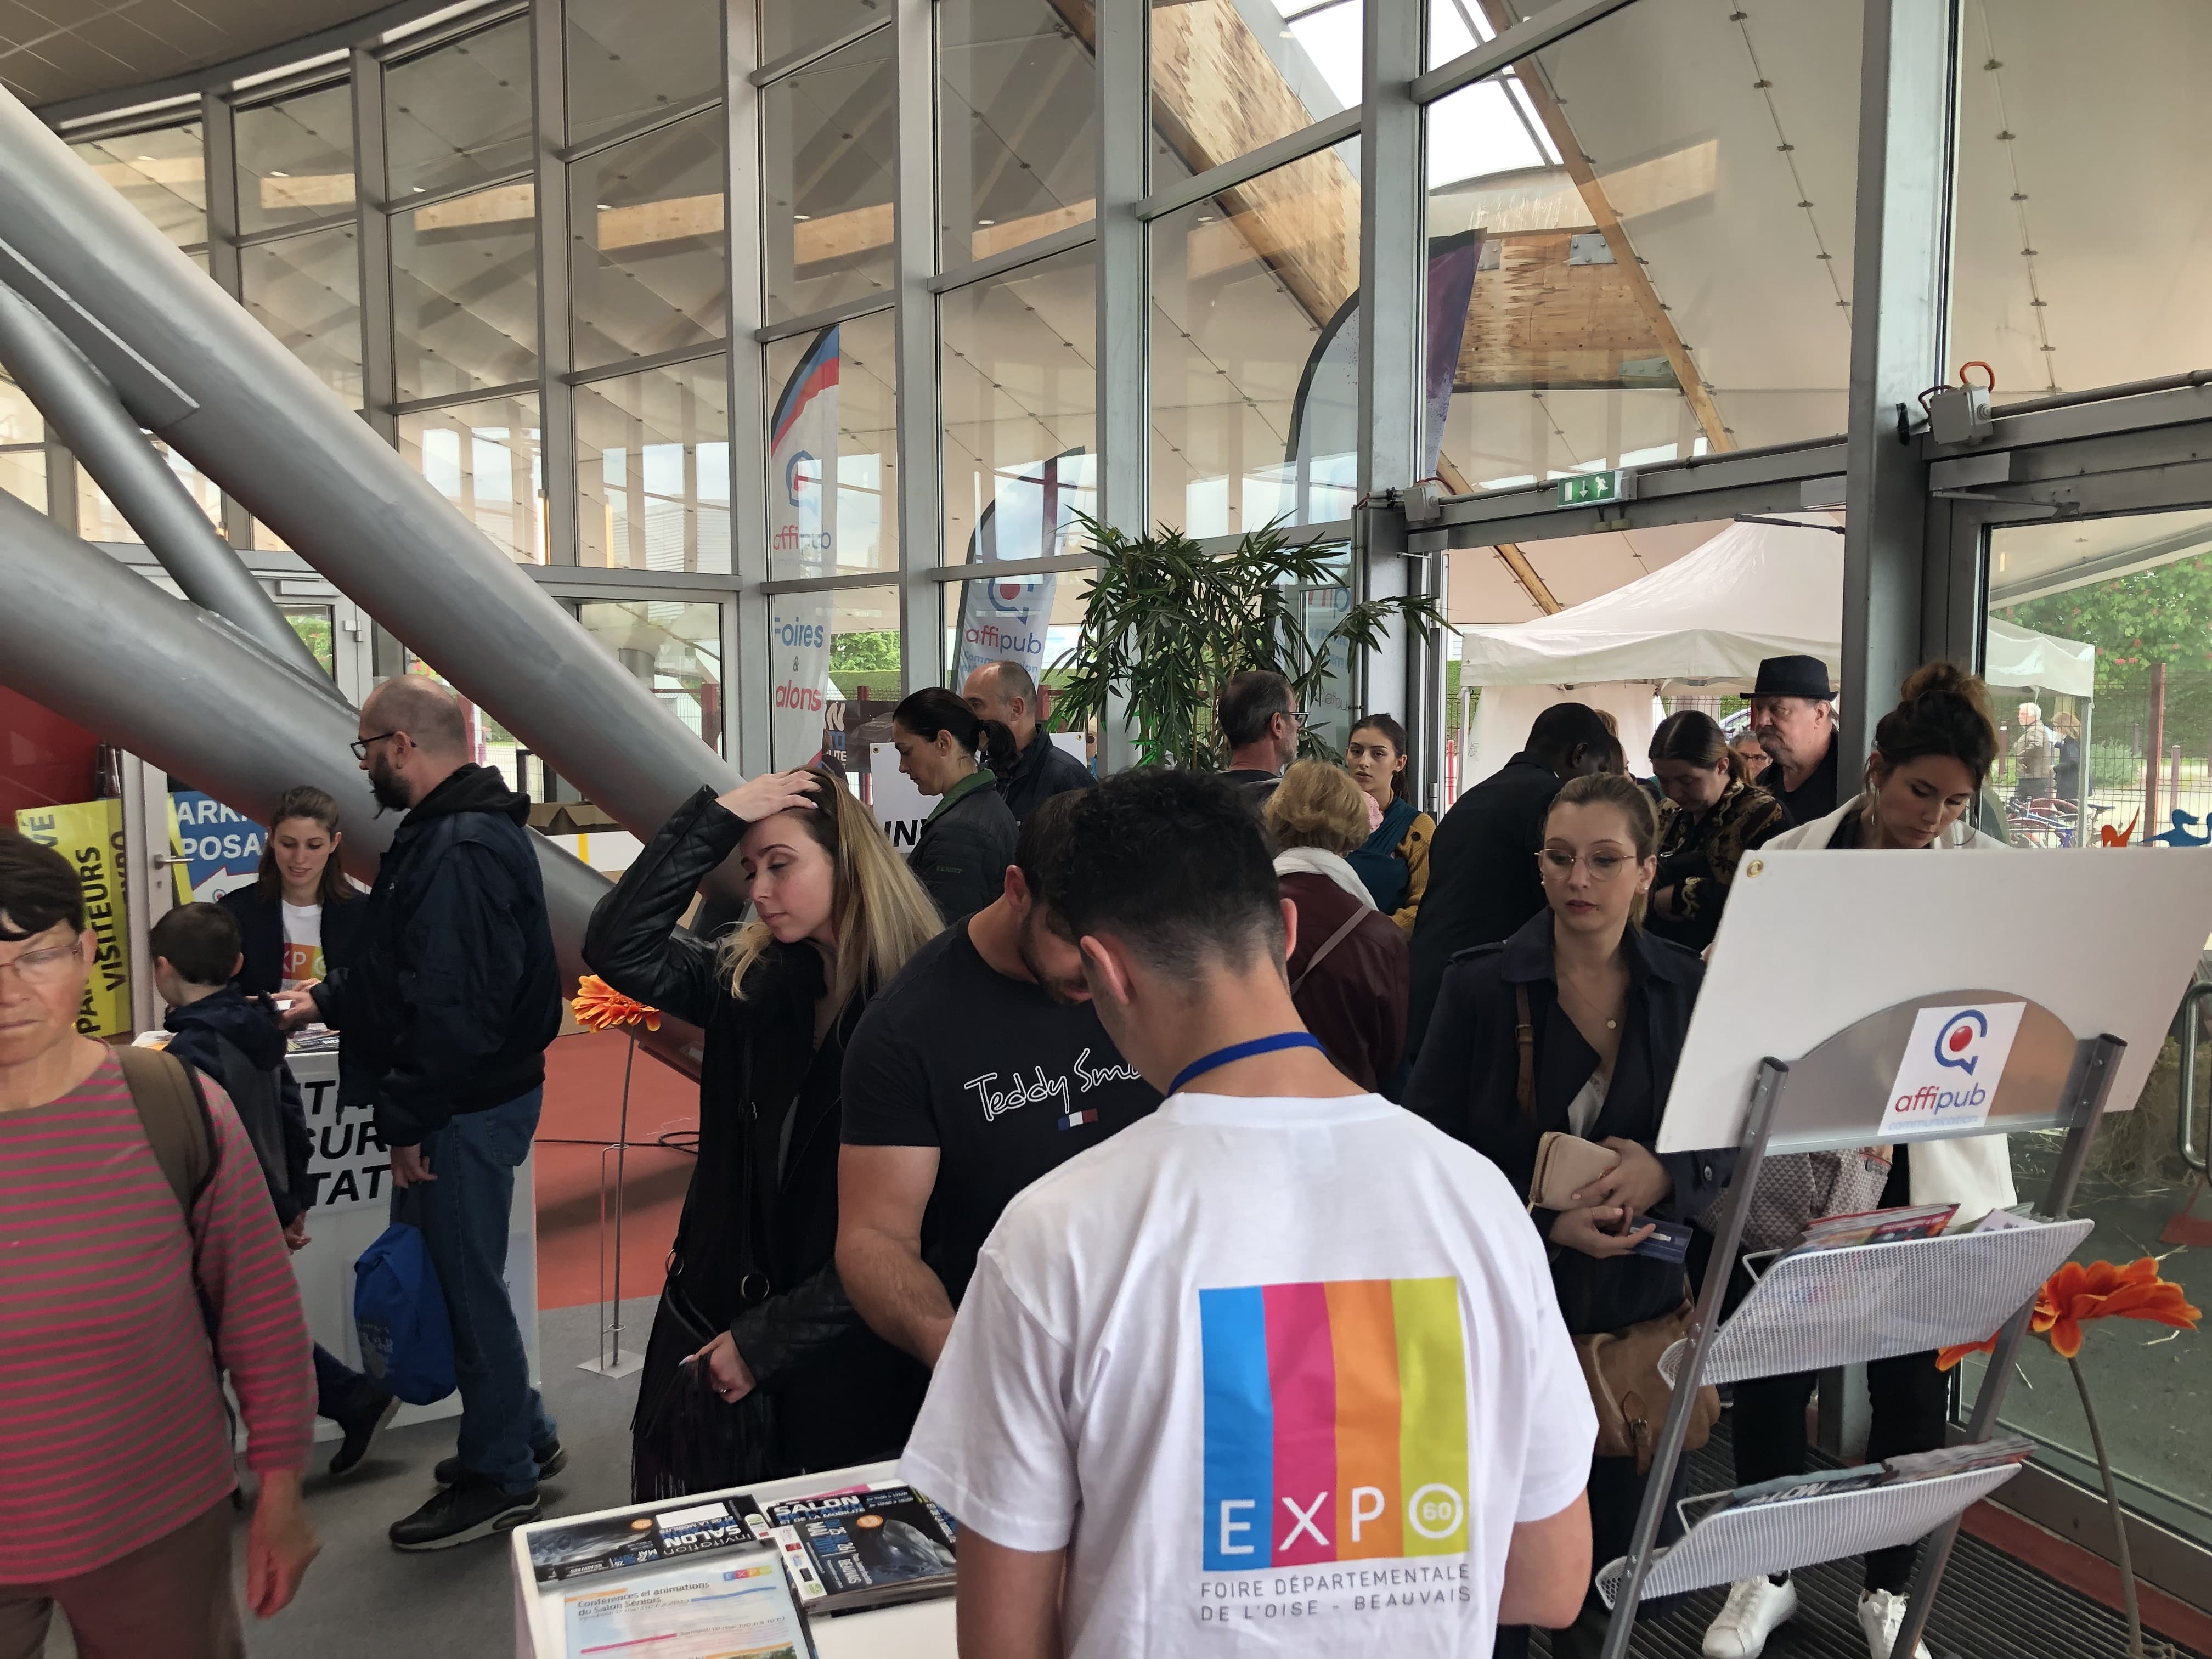 EXPO60-2019-foire-departemental-de-loise-beauvais-60-39-min